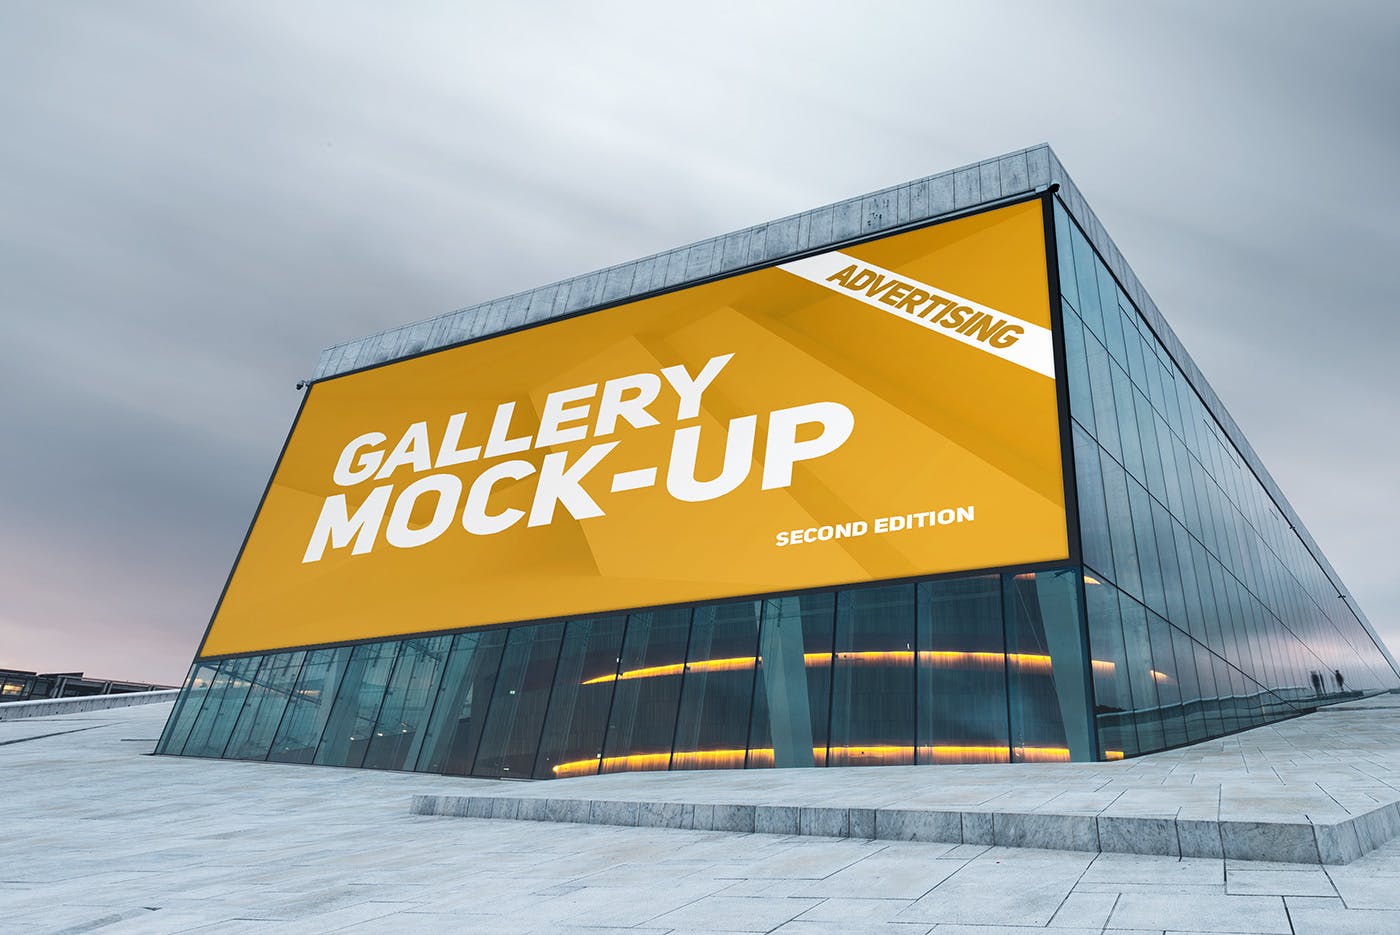 展厅画廊巨幅海报设计图样机素材中国精选模板v3 Gallery Poster Mockup v.3插图(10)